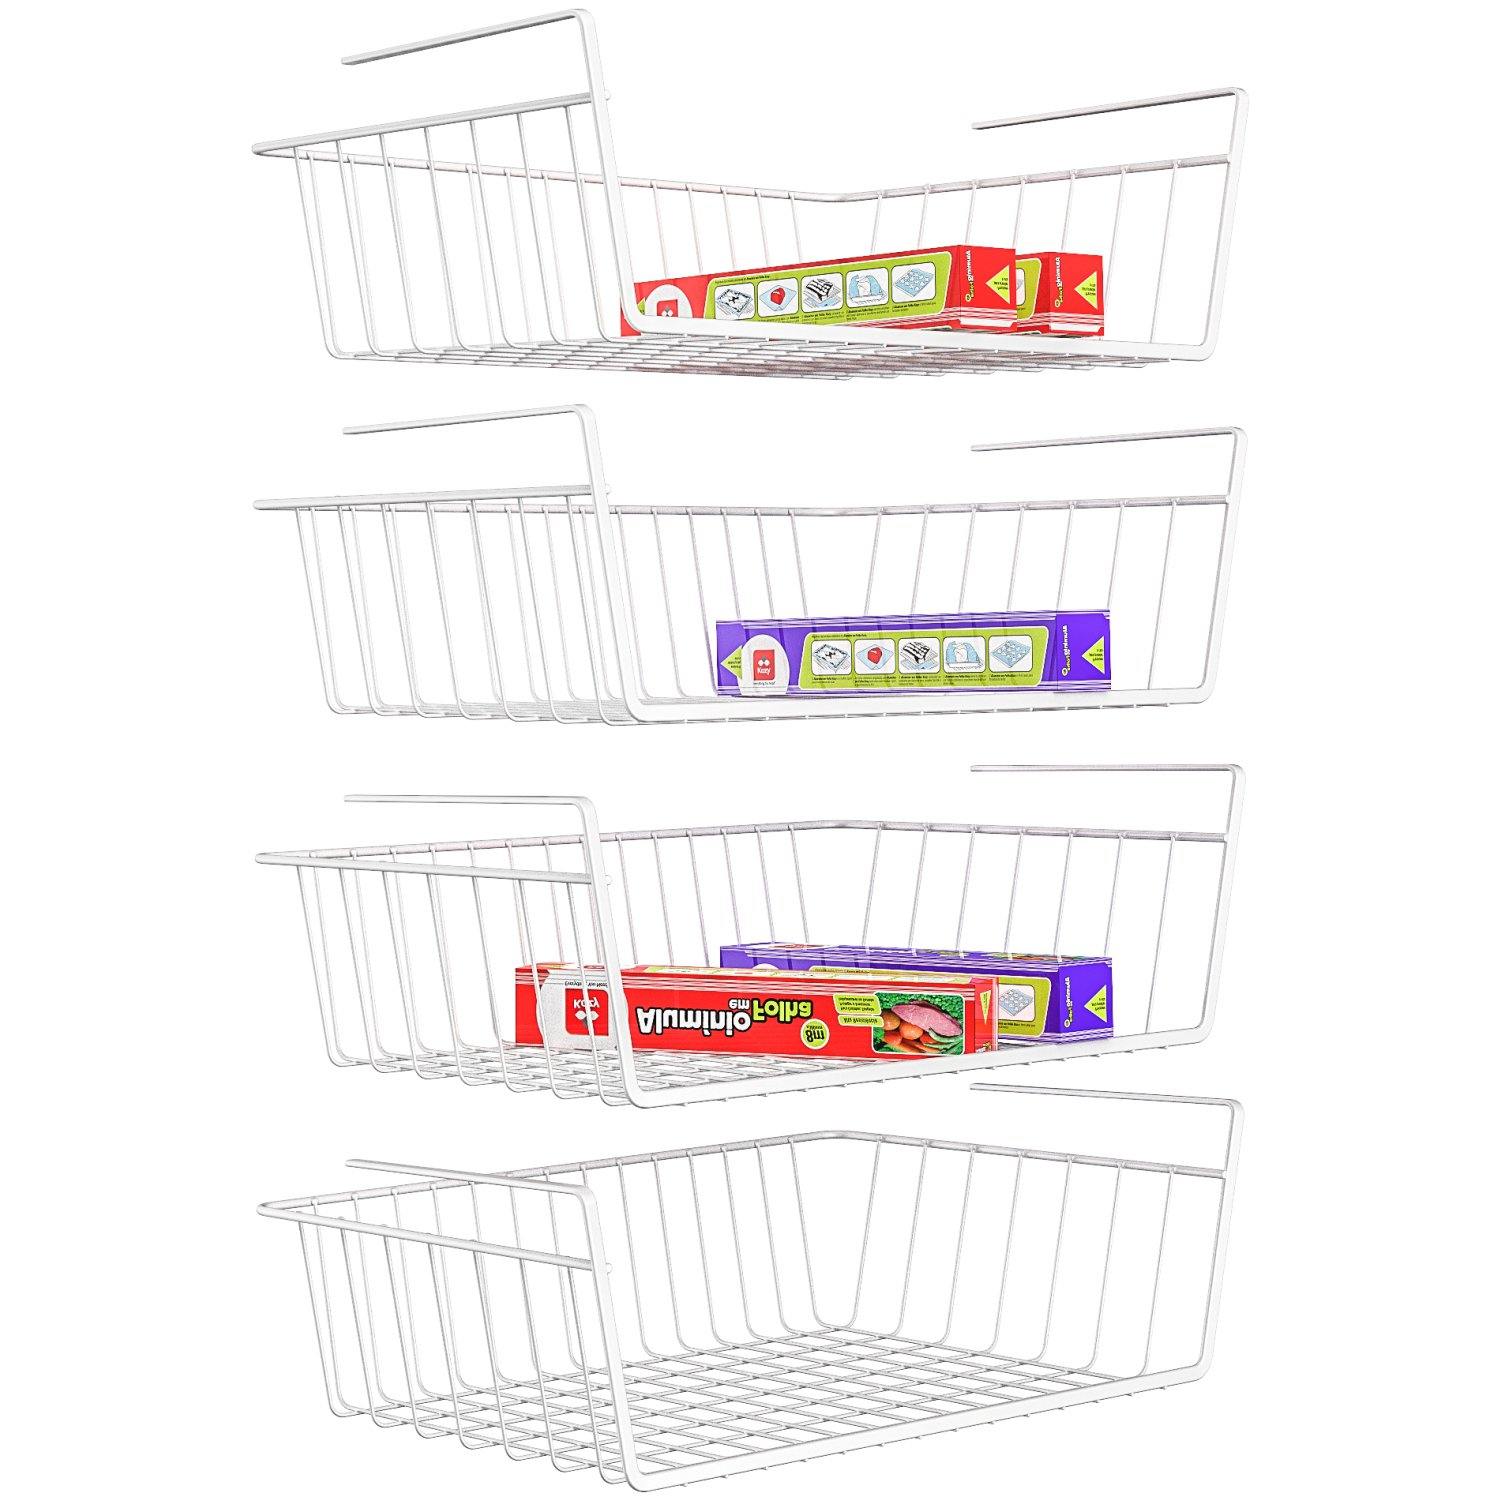 Hanging Under Shelf Storage Basket (4 Pack) - HR024 - iSPECLE